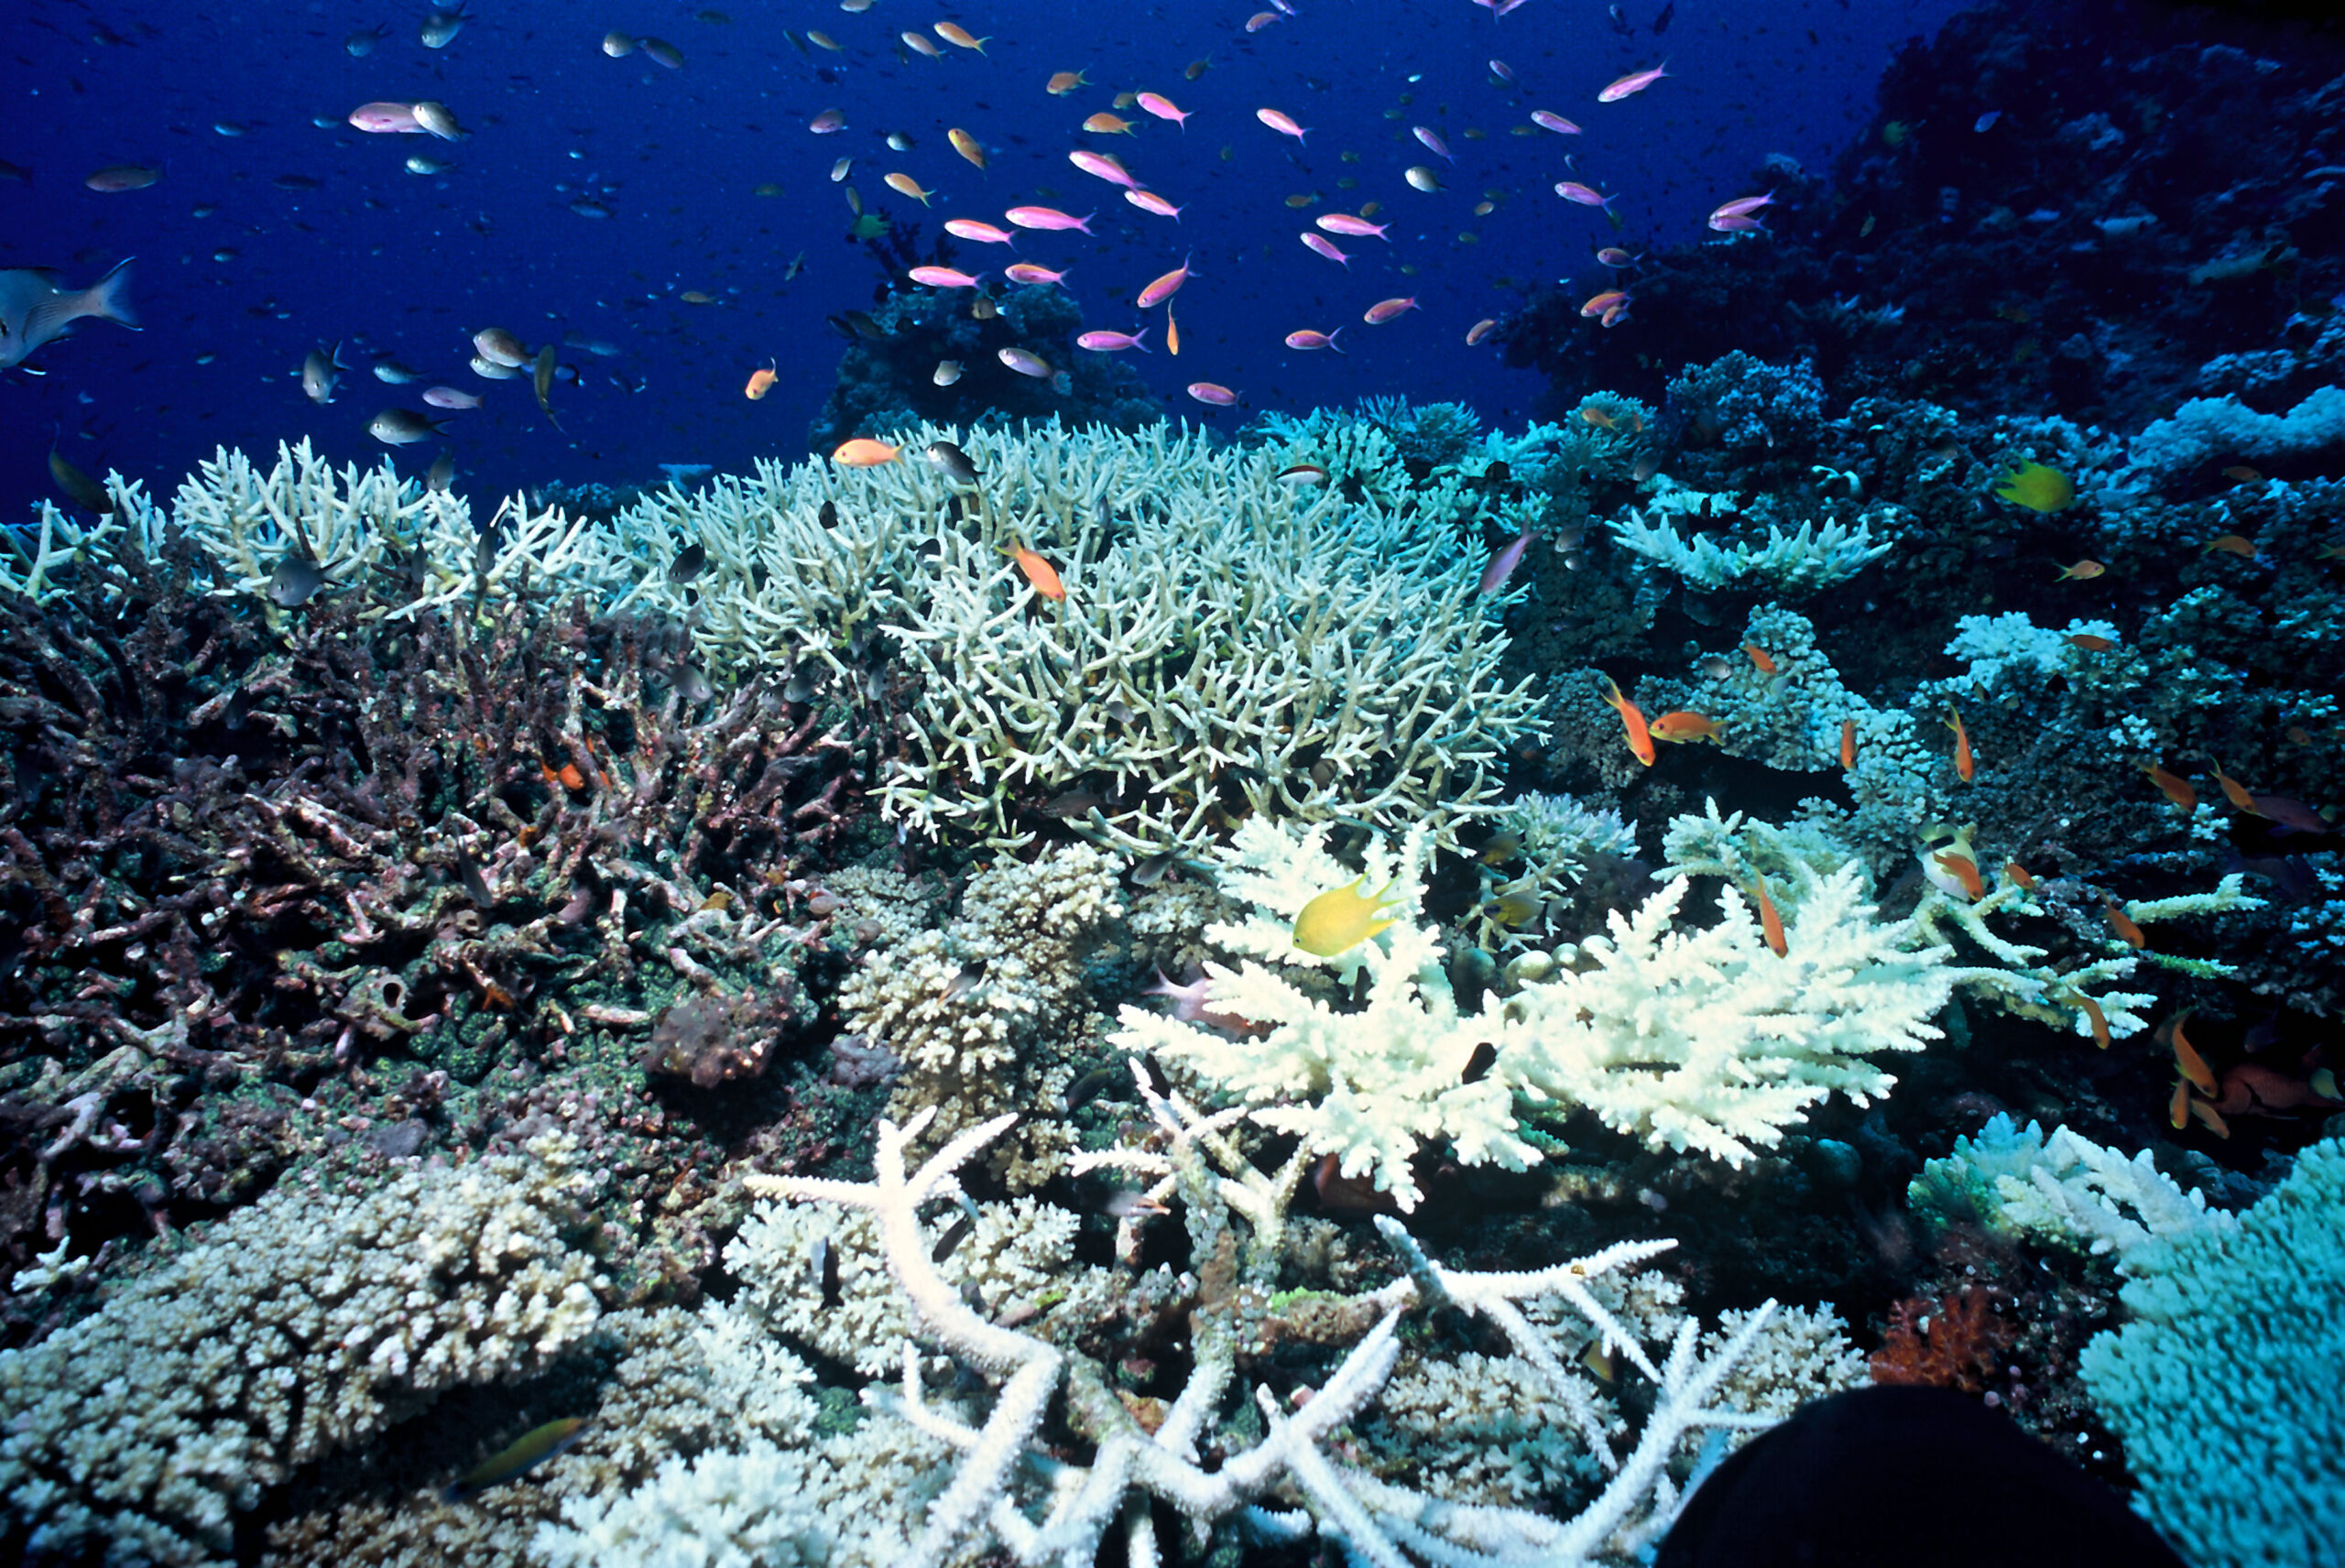 I coralli accumulano gli inquinanti del mare - Il NordEst Quotidiano